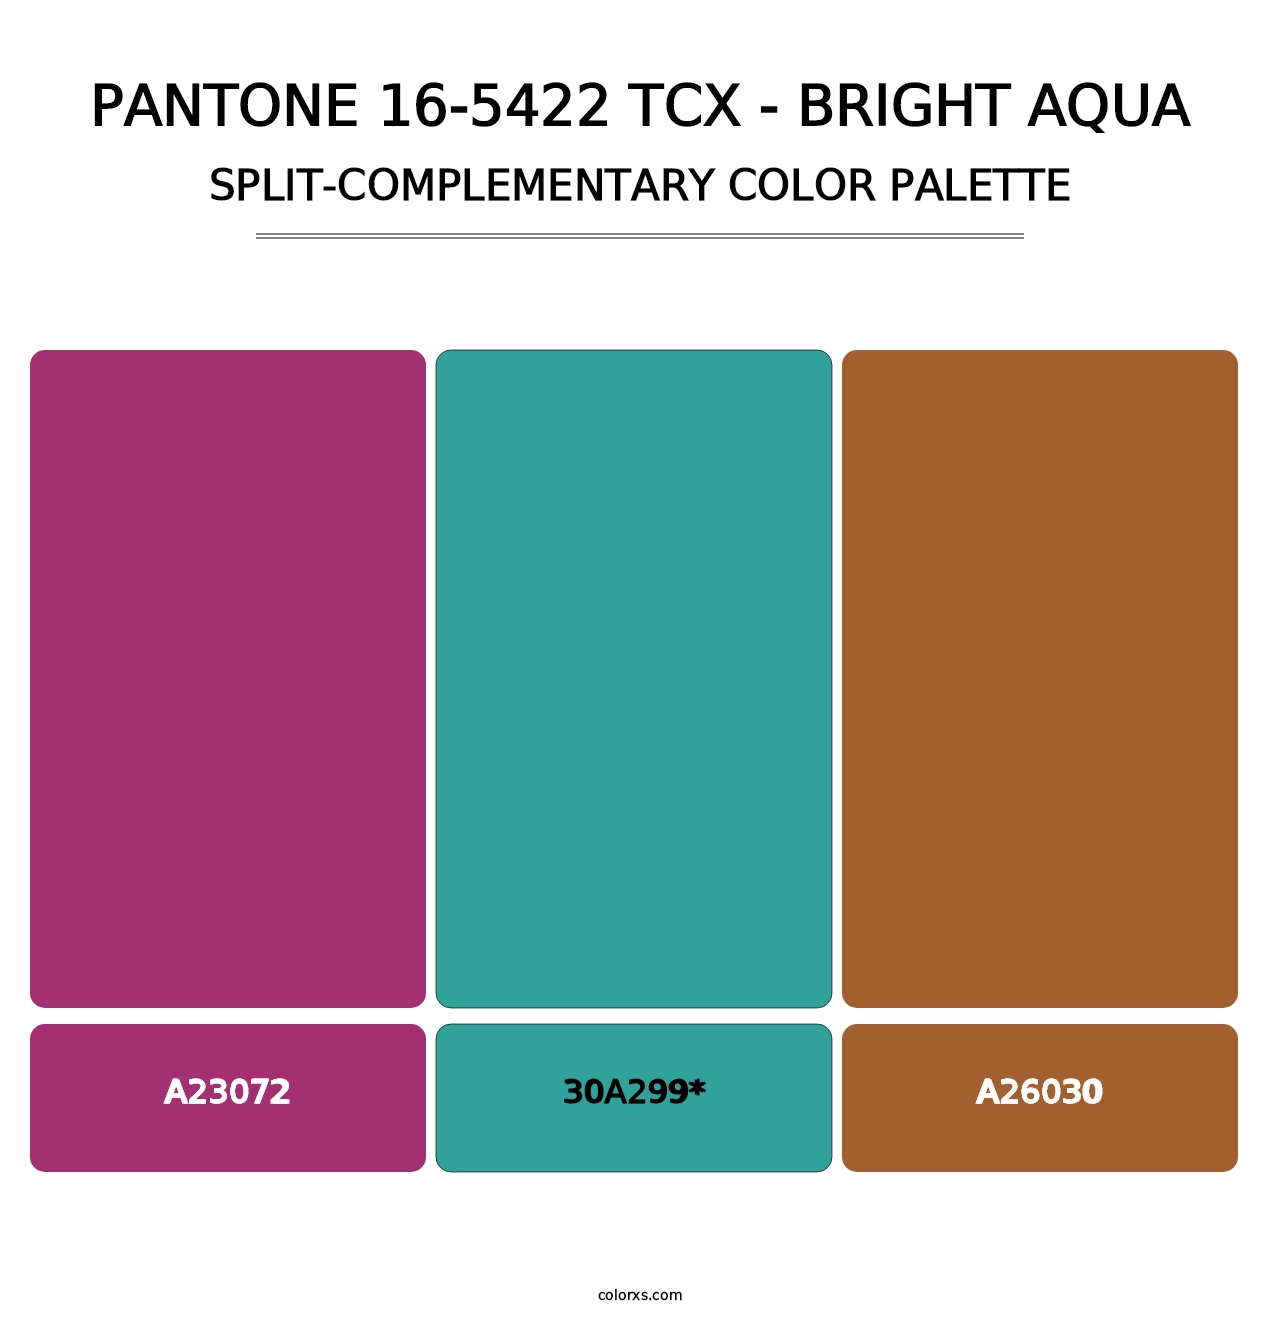 PANTONE 16-5422 TCX - Bright Aqua - Split-Complementary Color Palette